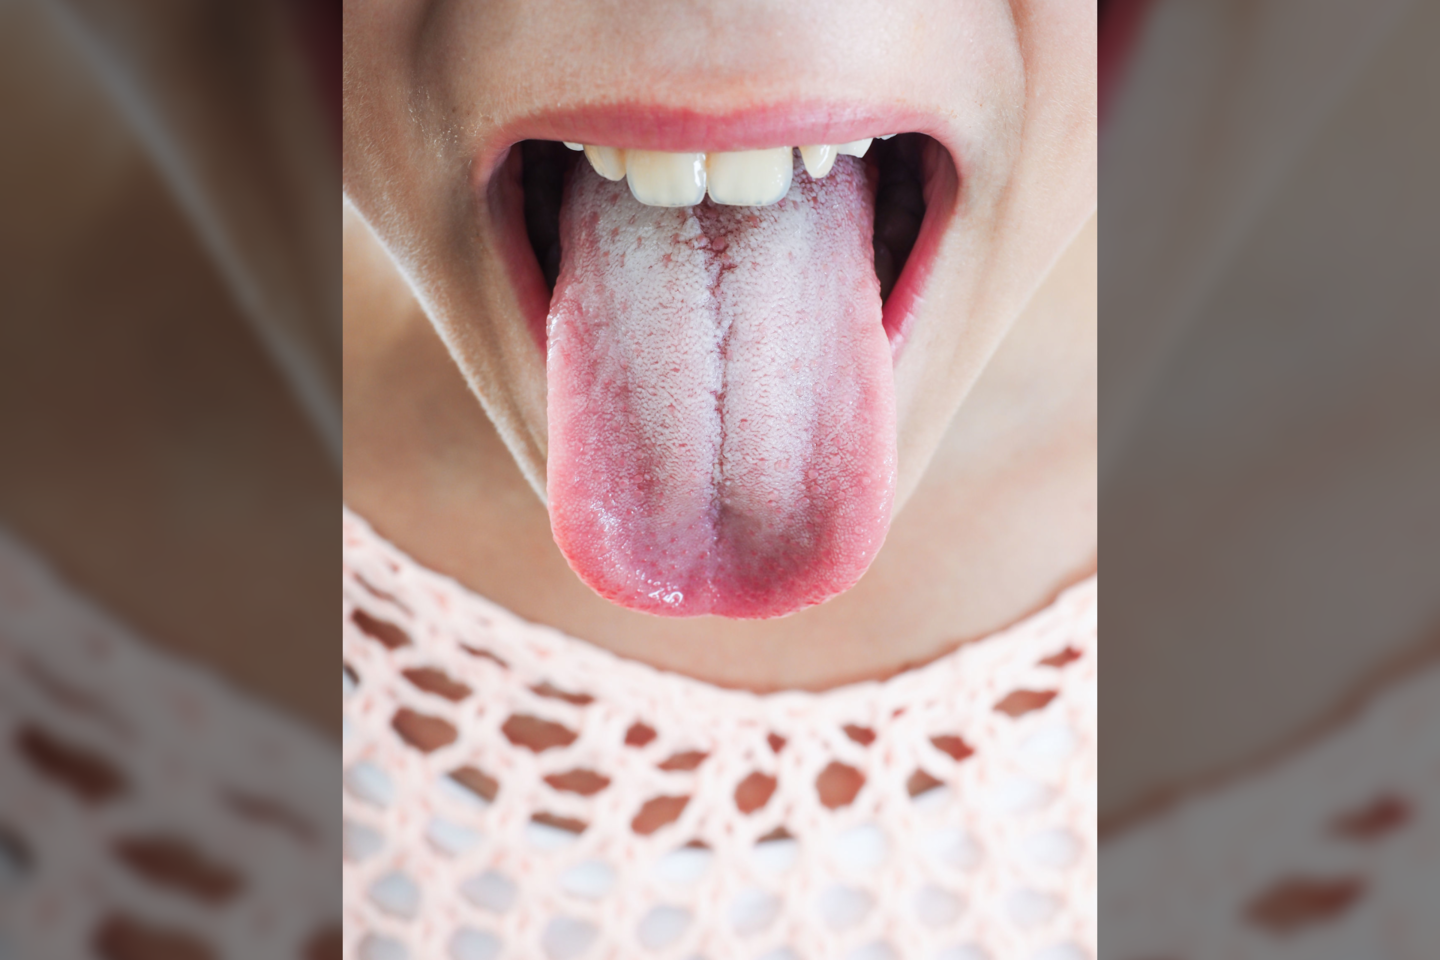  Atskleidė, ką apie jūsų sveikatą pasako liežuvio išvaizda.<br> 123rf.com nuotr.